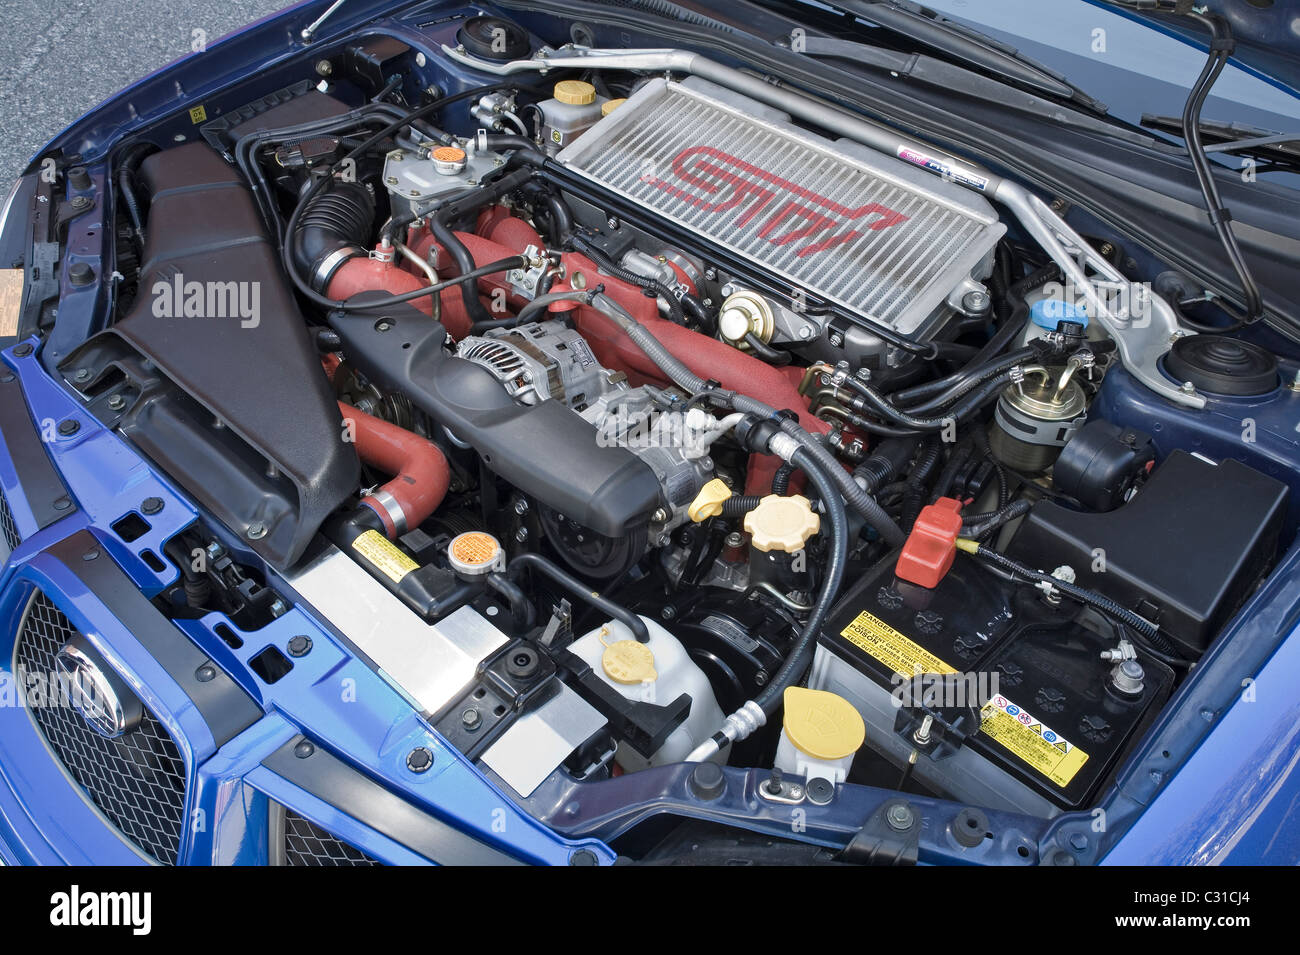 Subaru Impreza WRX STi Japanese Sports Car Engine Bay Stock Photo Alamy